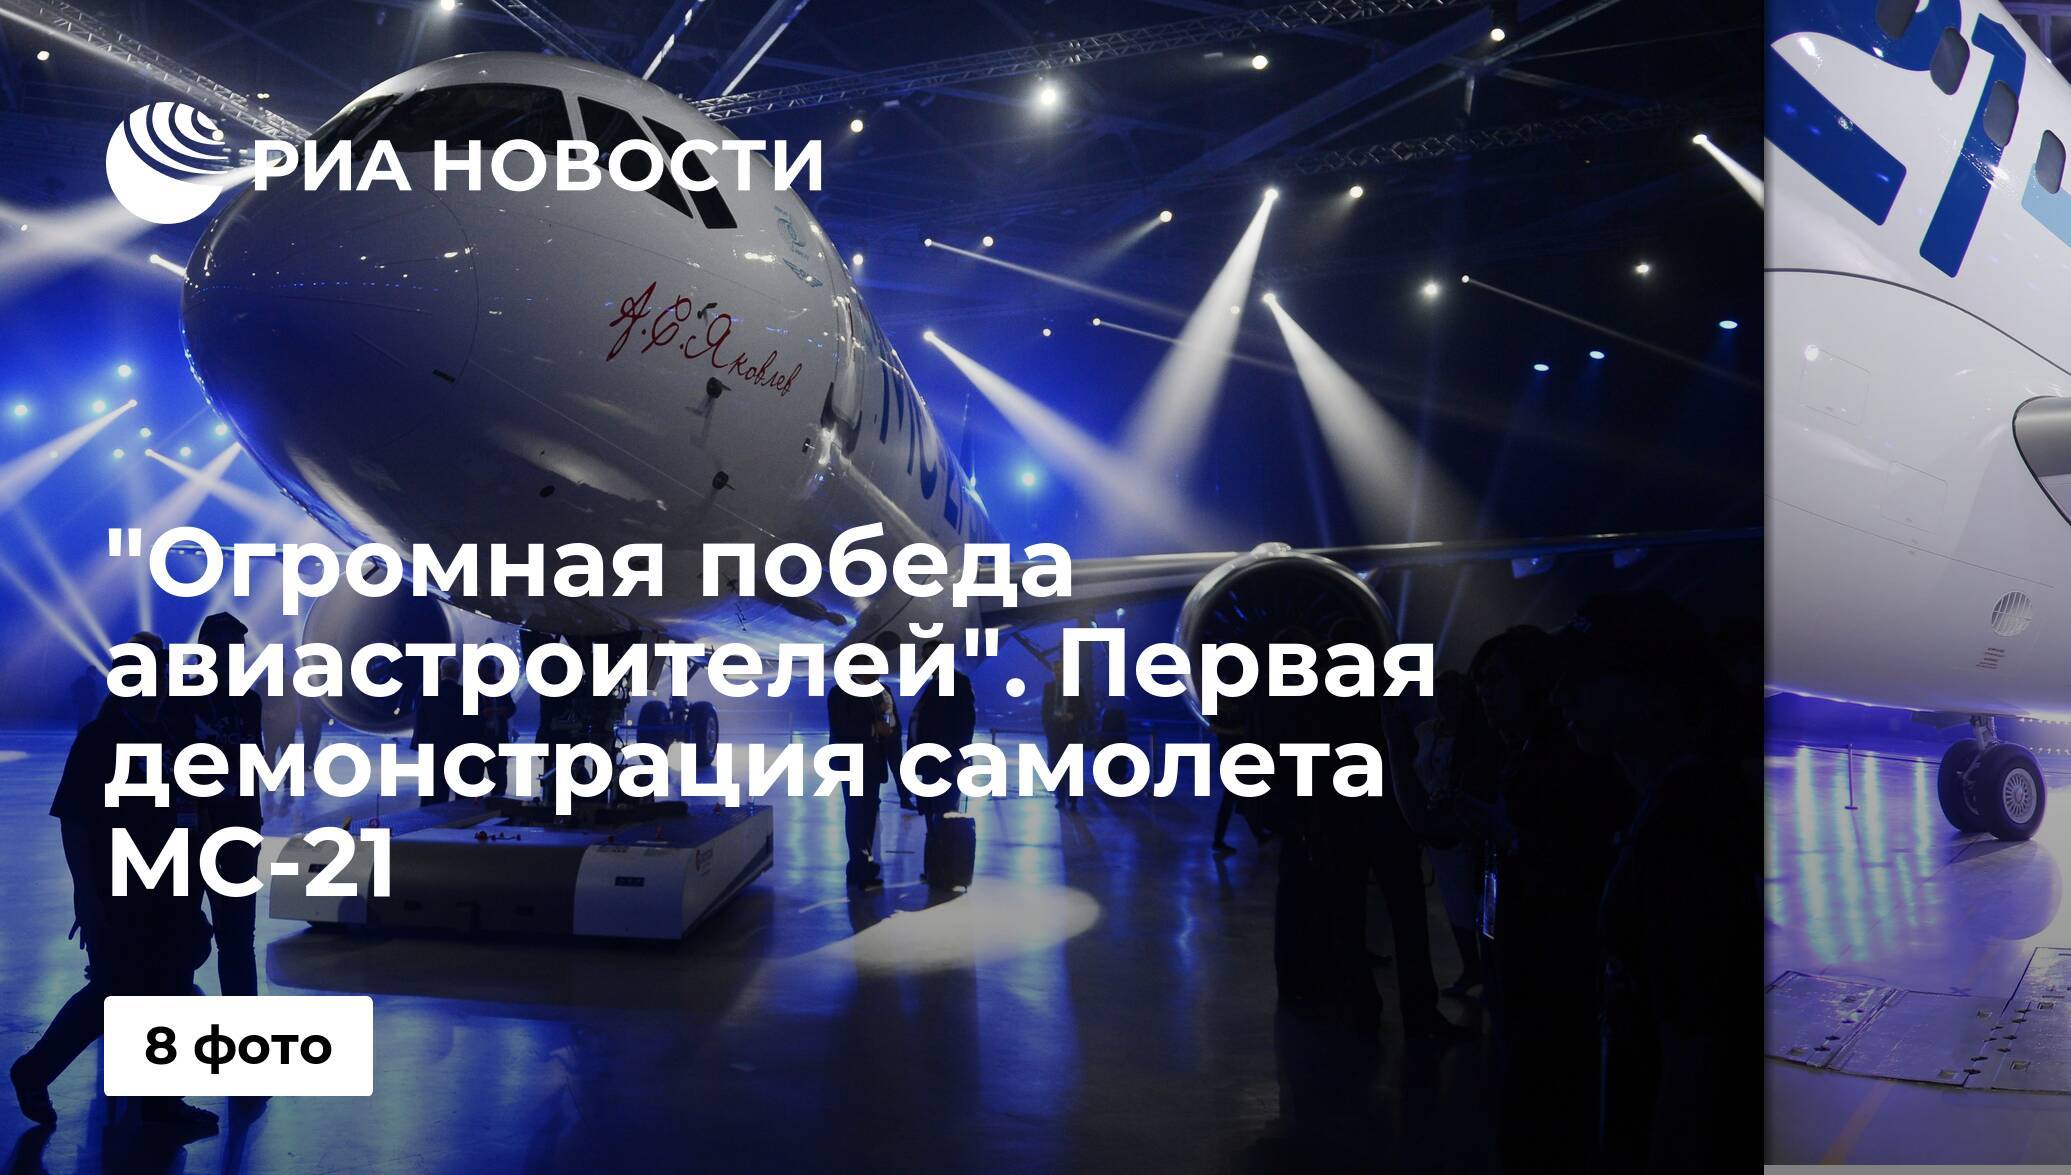 Мс 21: испытания, презентация и технические характеристики среднемагистрального российского авиалайнера, демонстрация выкатки, какая стоимость, новый двигатель